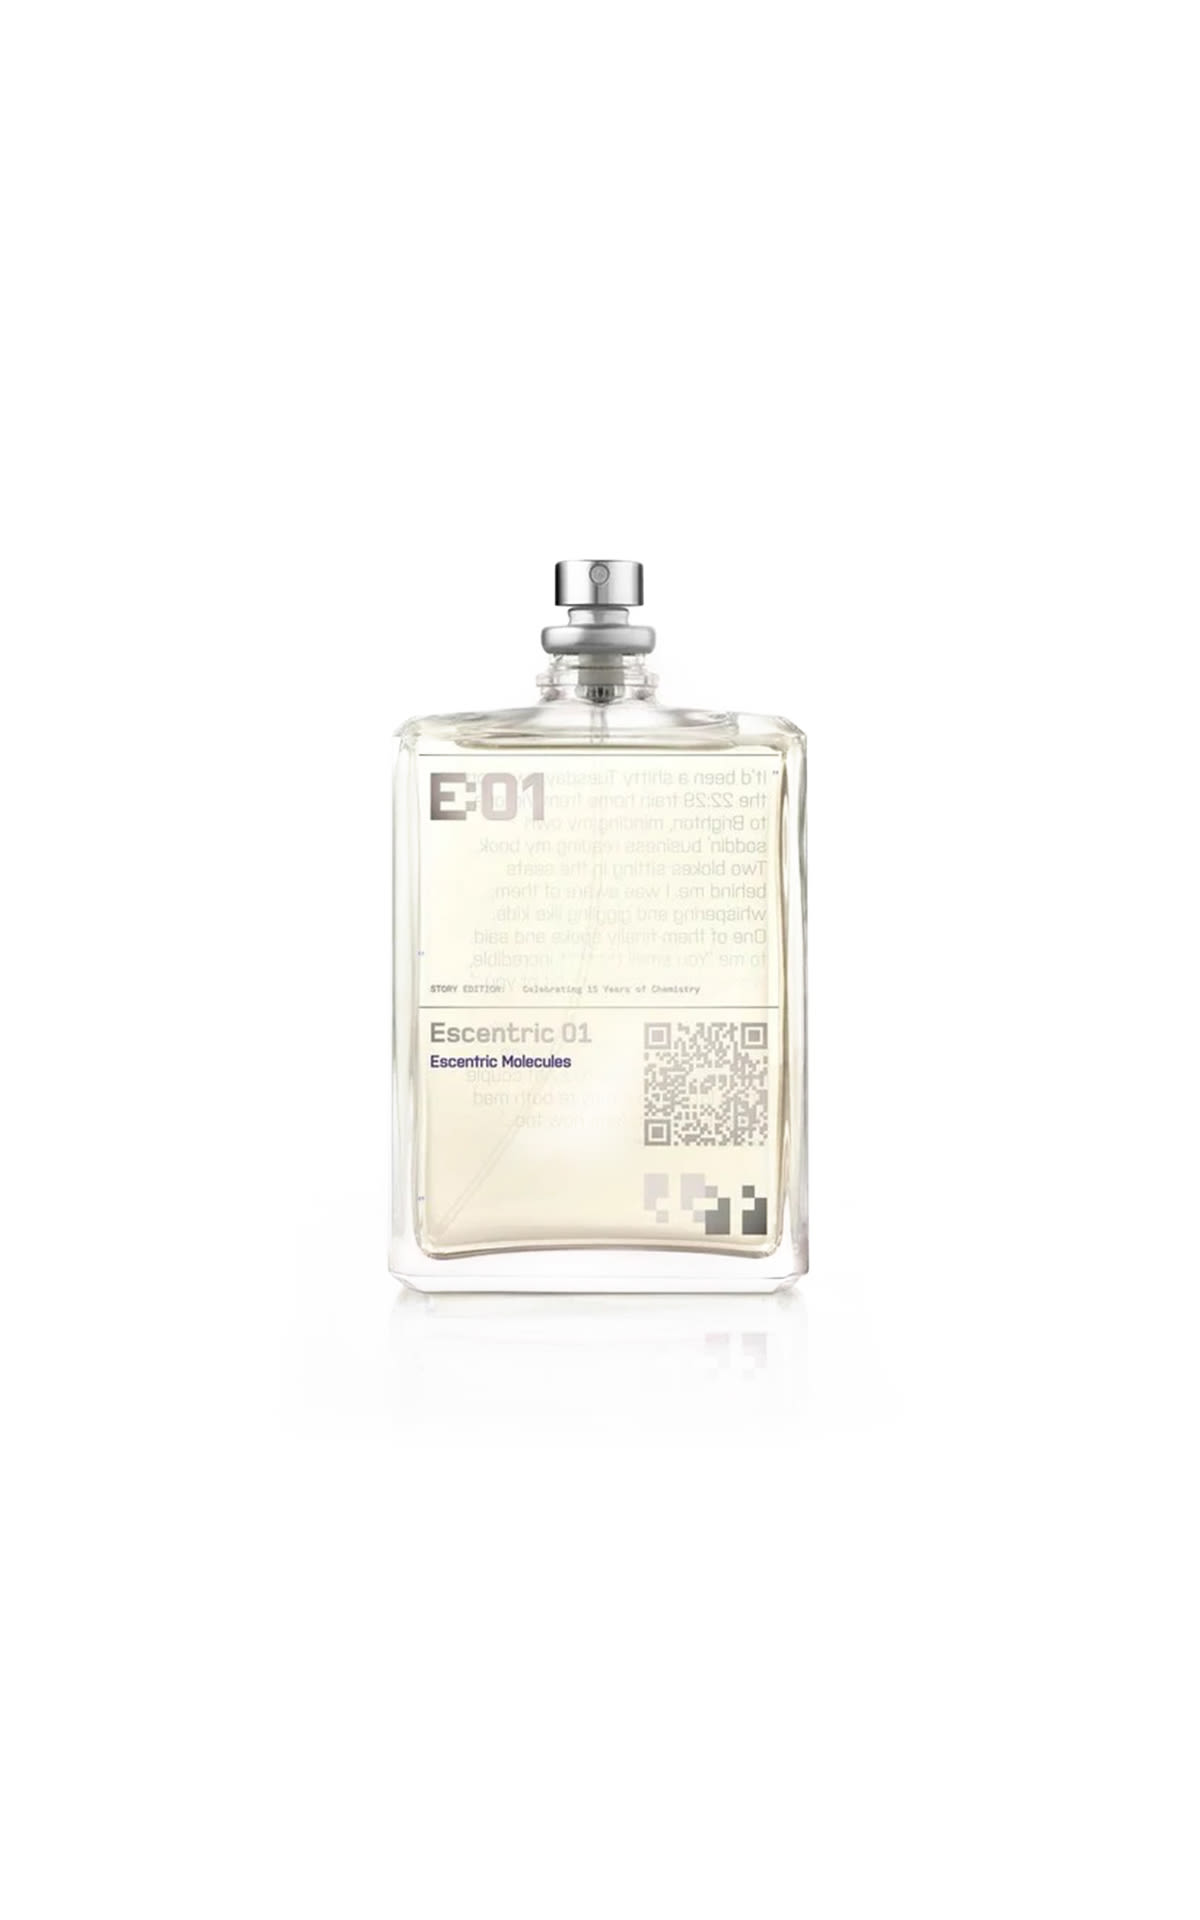 Perfume E:01 Pinalli